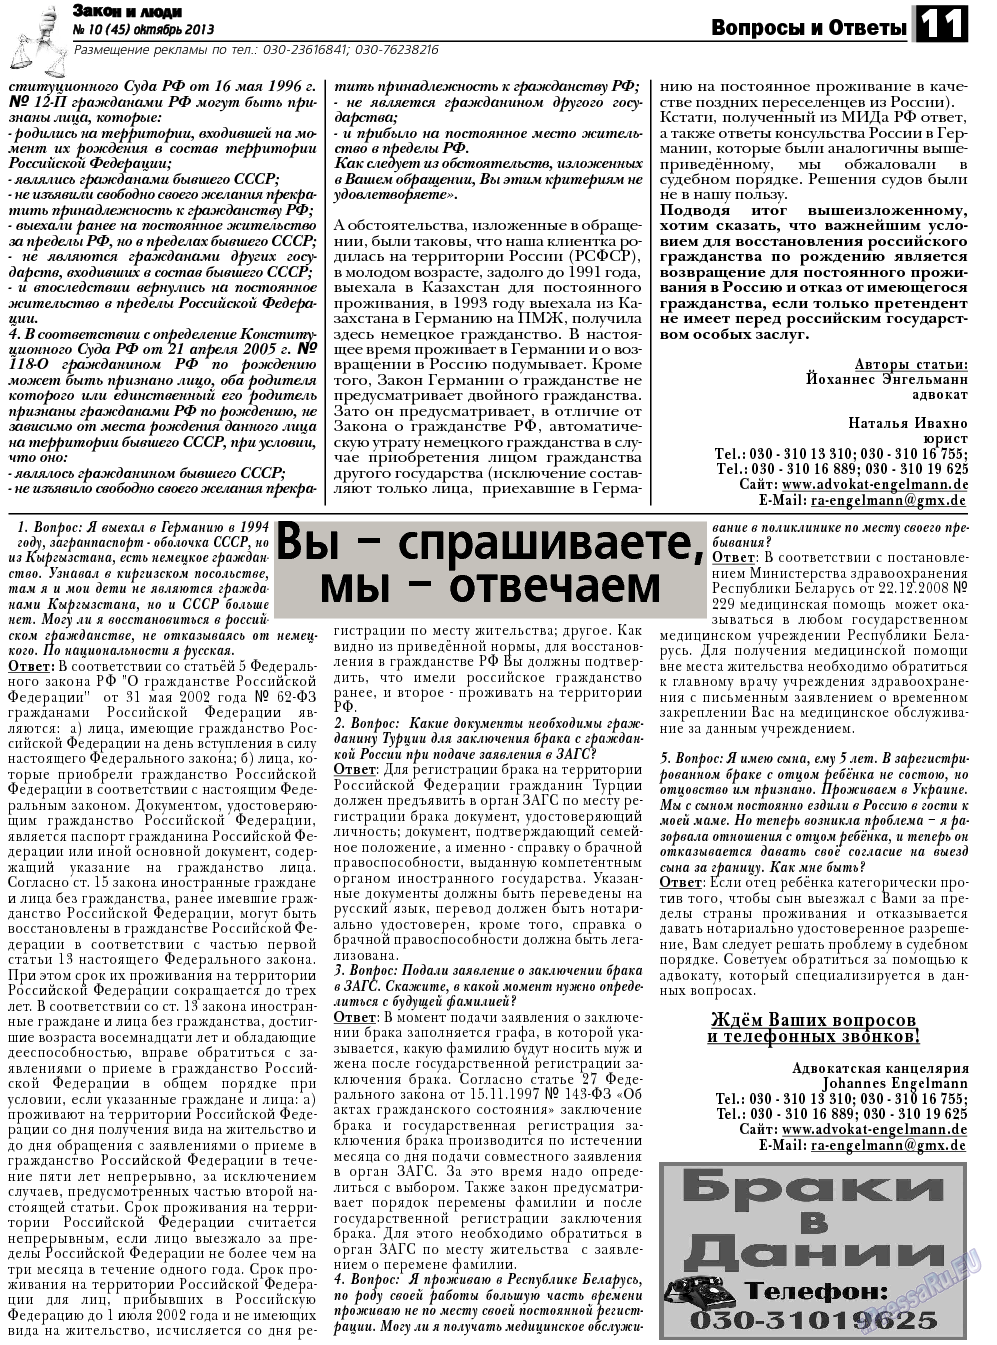 Закон и люди (газета). 2013 год, номер 10, стр. 11